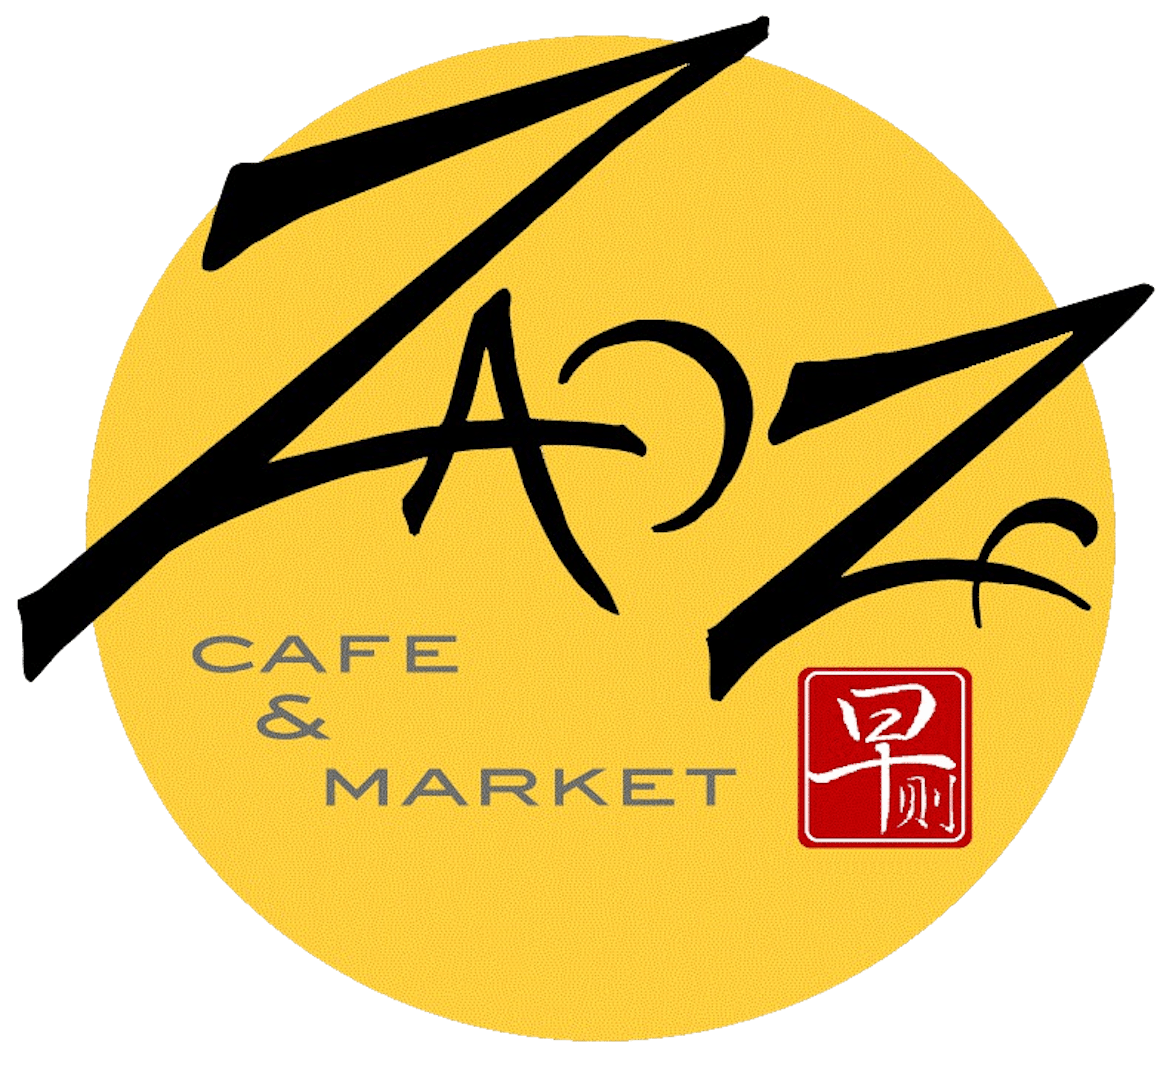 ZaoZe Cafe & Market